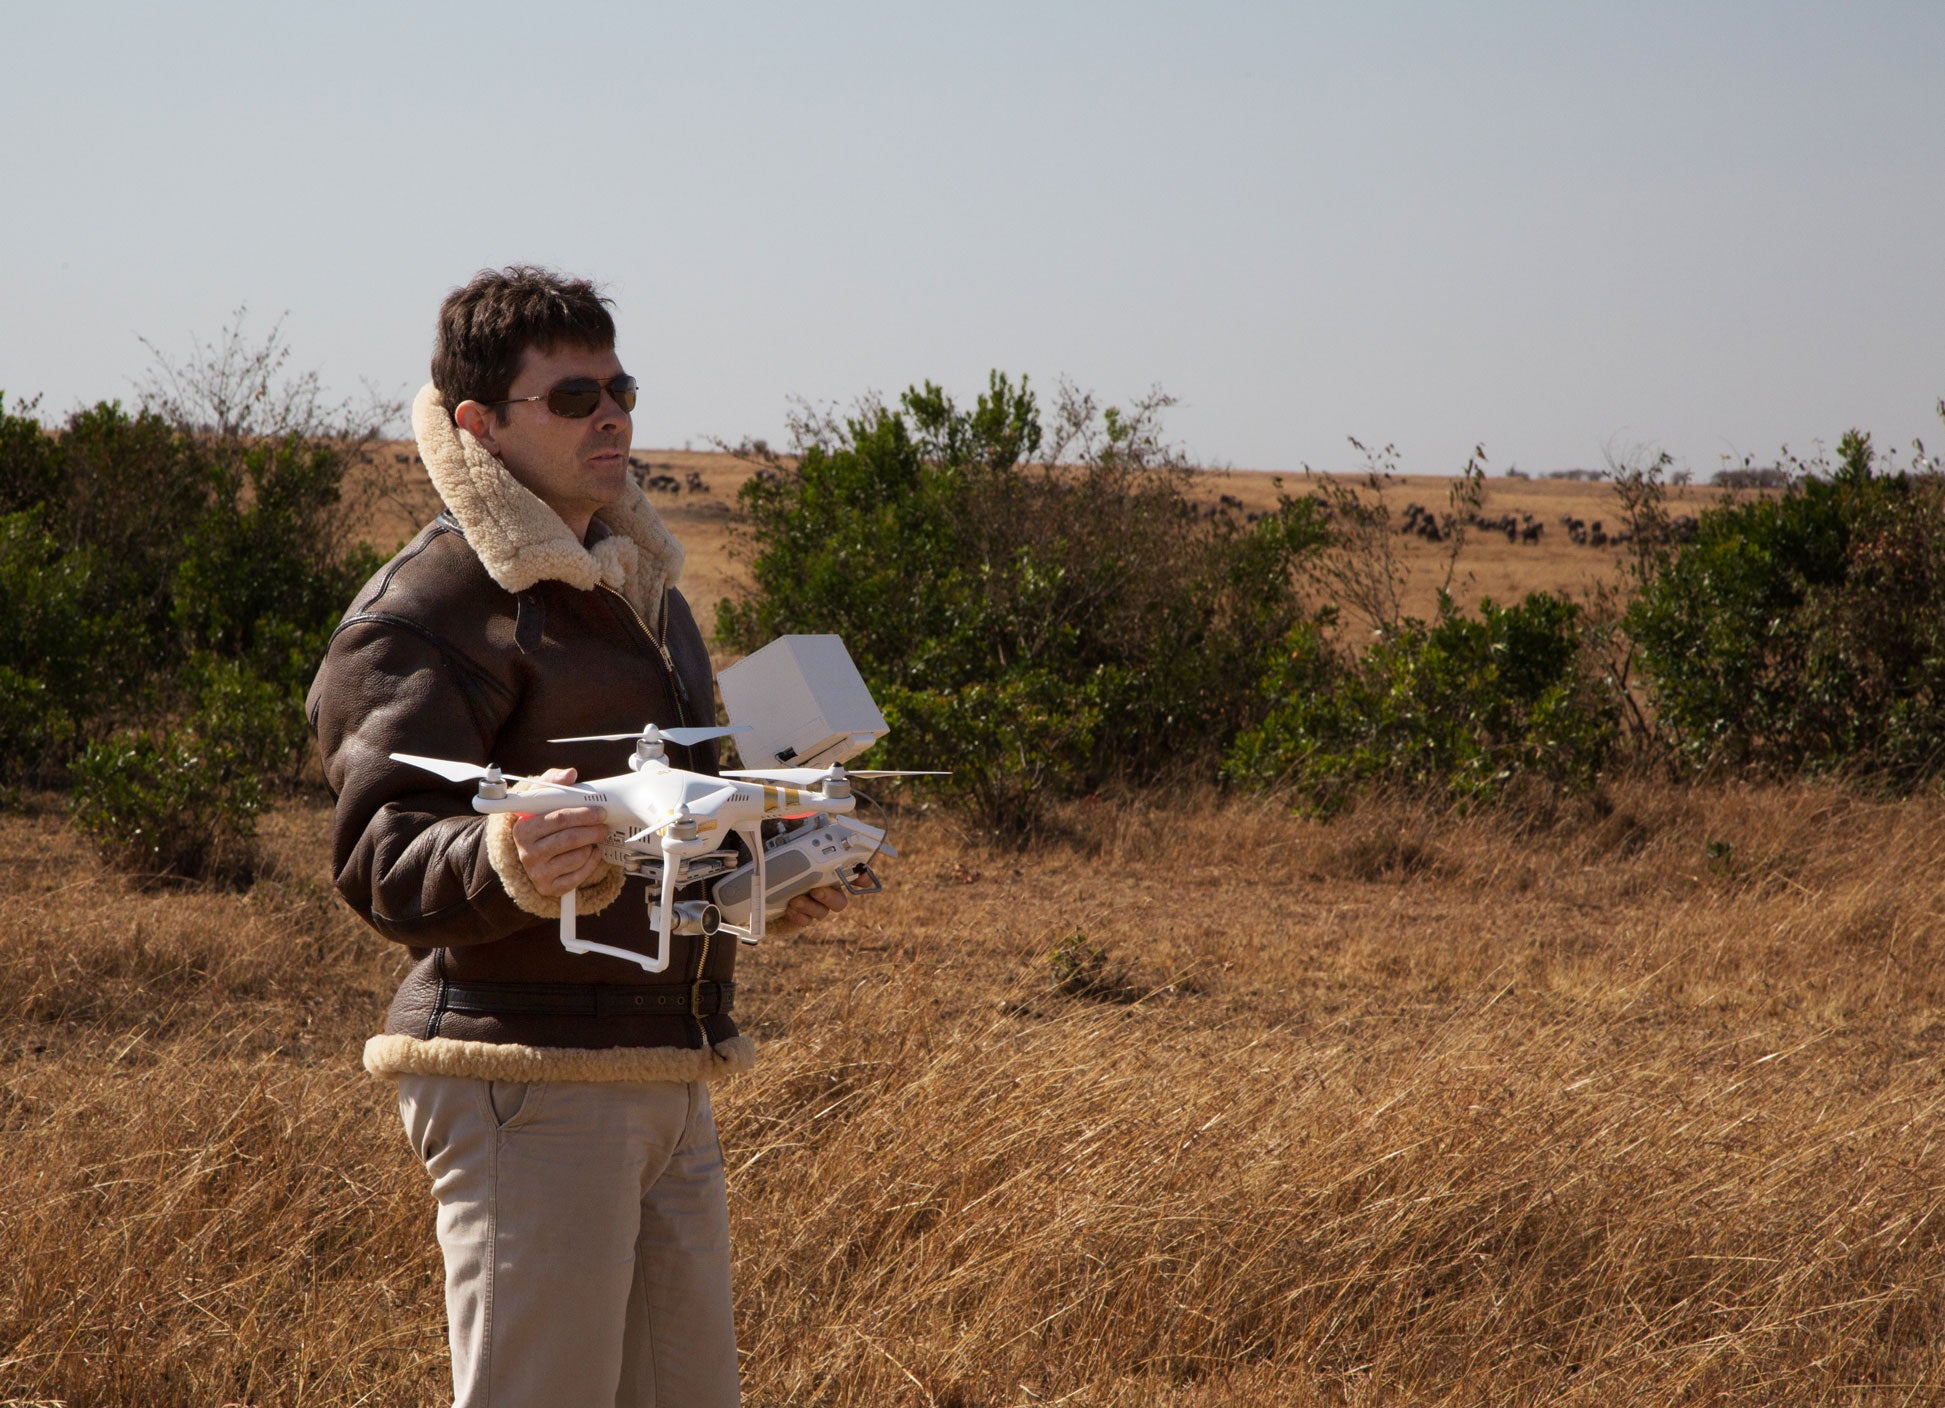 马特·兰迪斯 (Matt Landis) 和他的无人机准备拍摄非洲荒野。